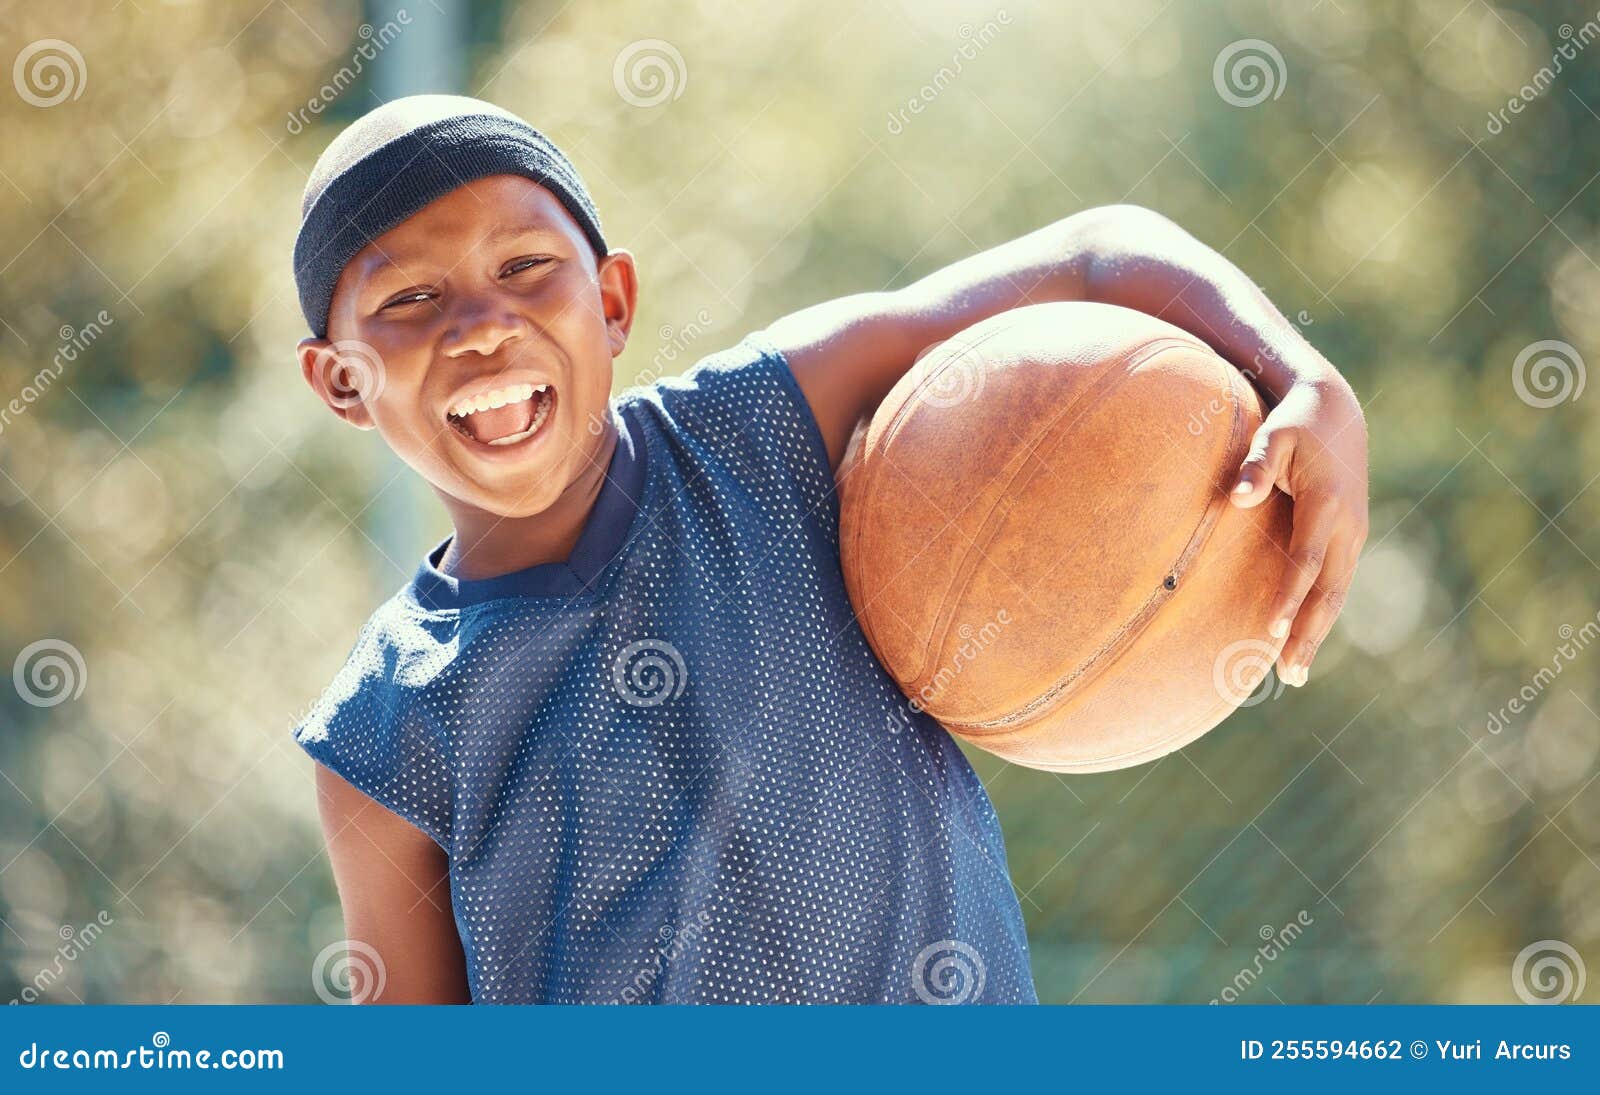 Criança de lesão no joelho de basquete com o pai colocou band-aid